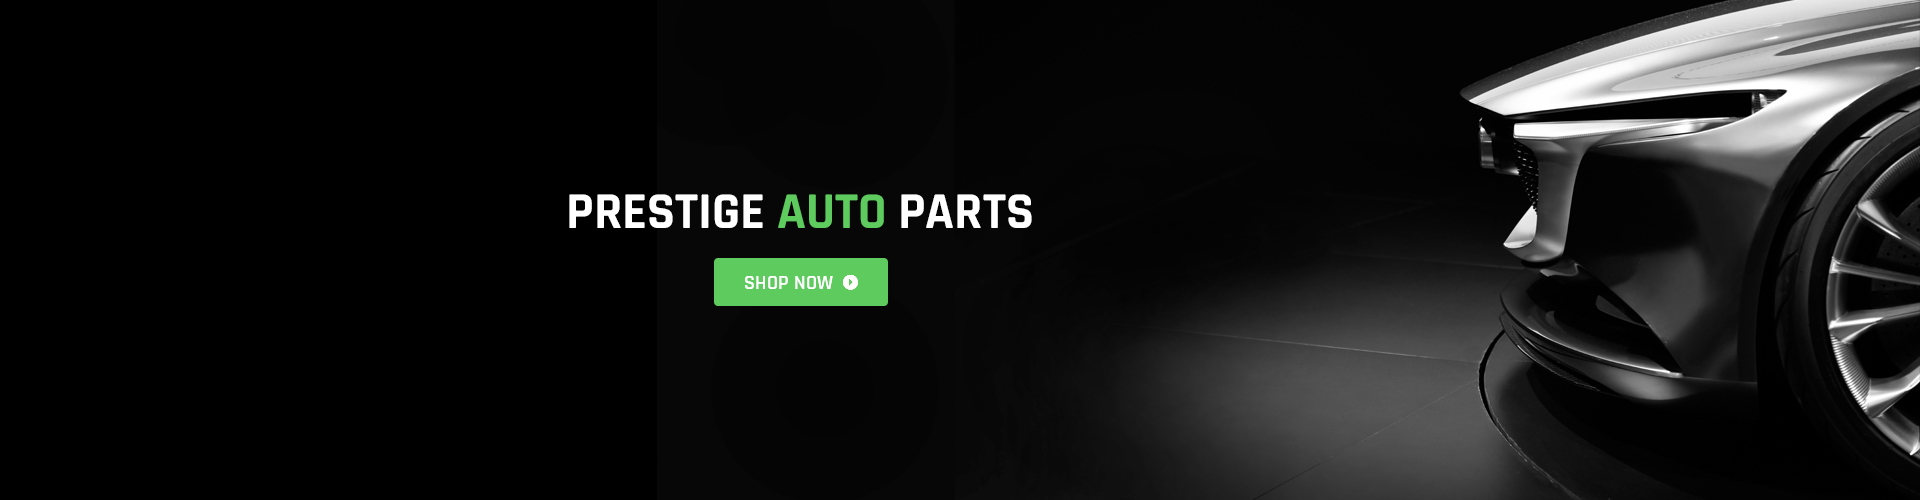 Prestige Auto Parts Main Banner